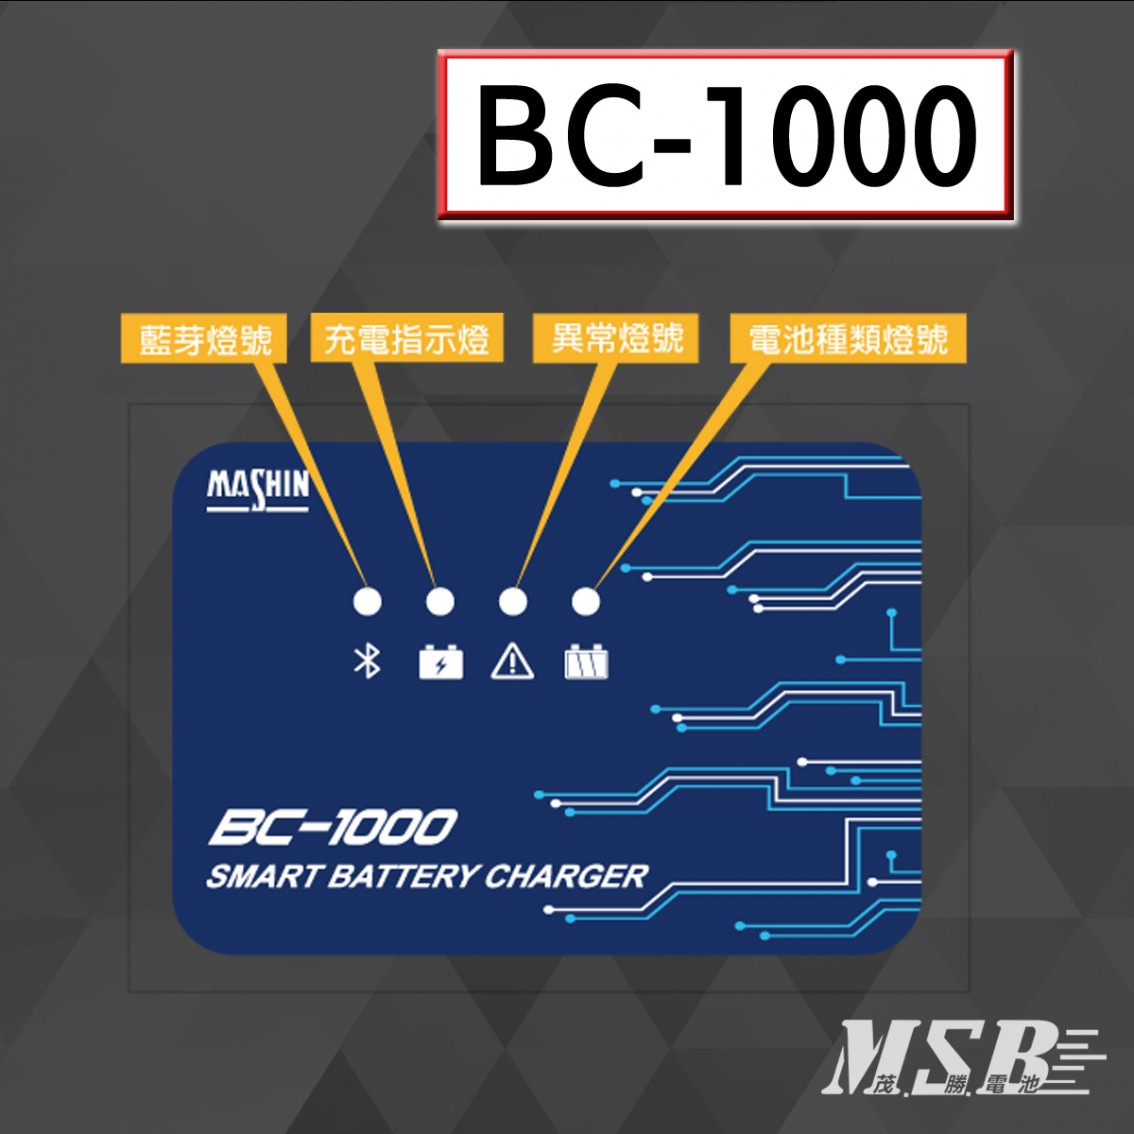 BC-1000